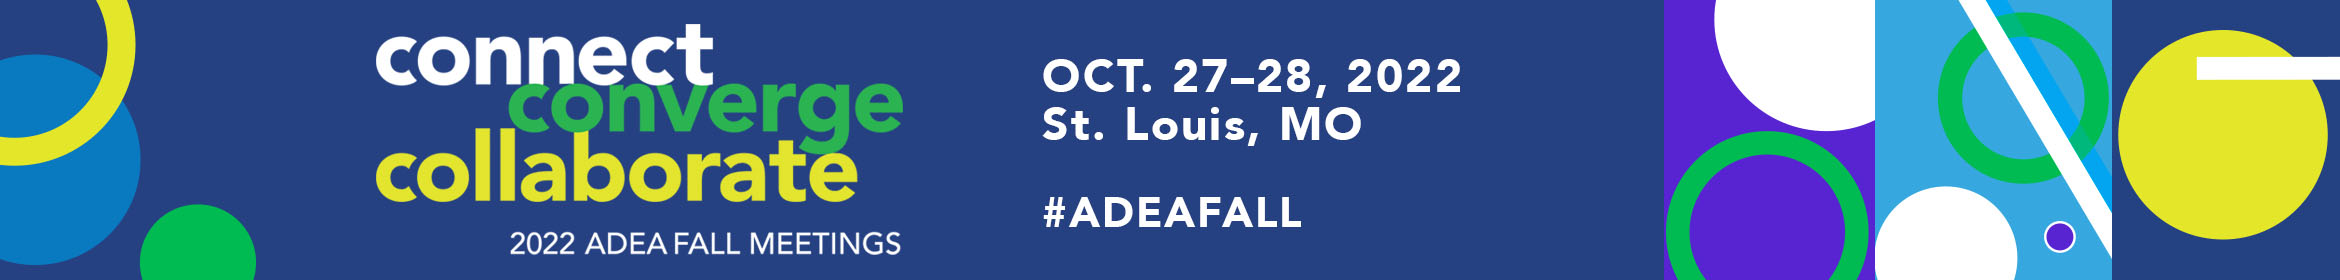 2022 ADEA Fall Meetings  Main banner